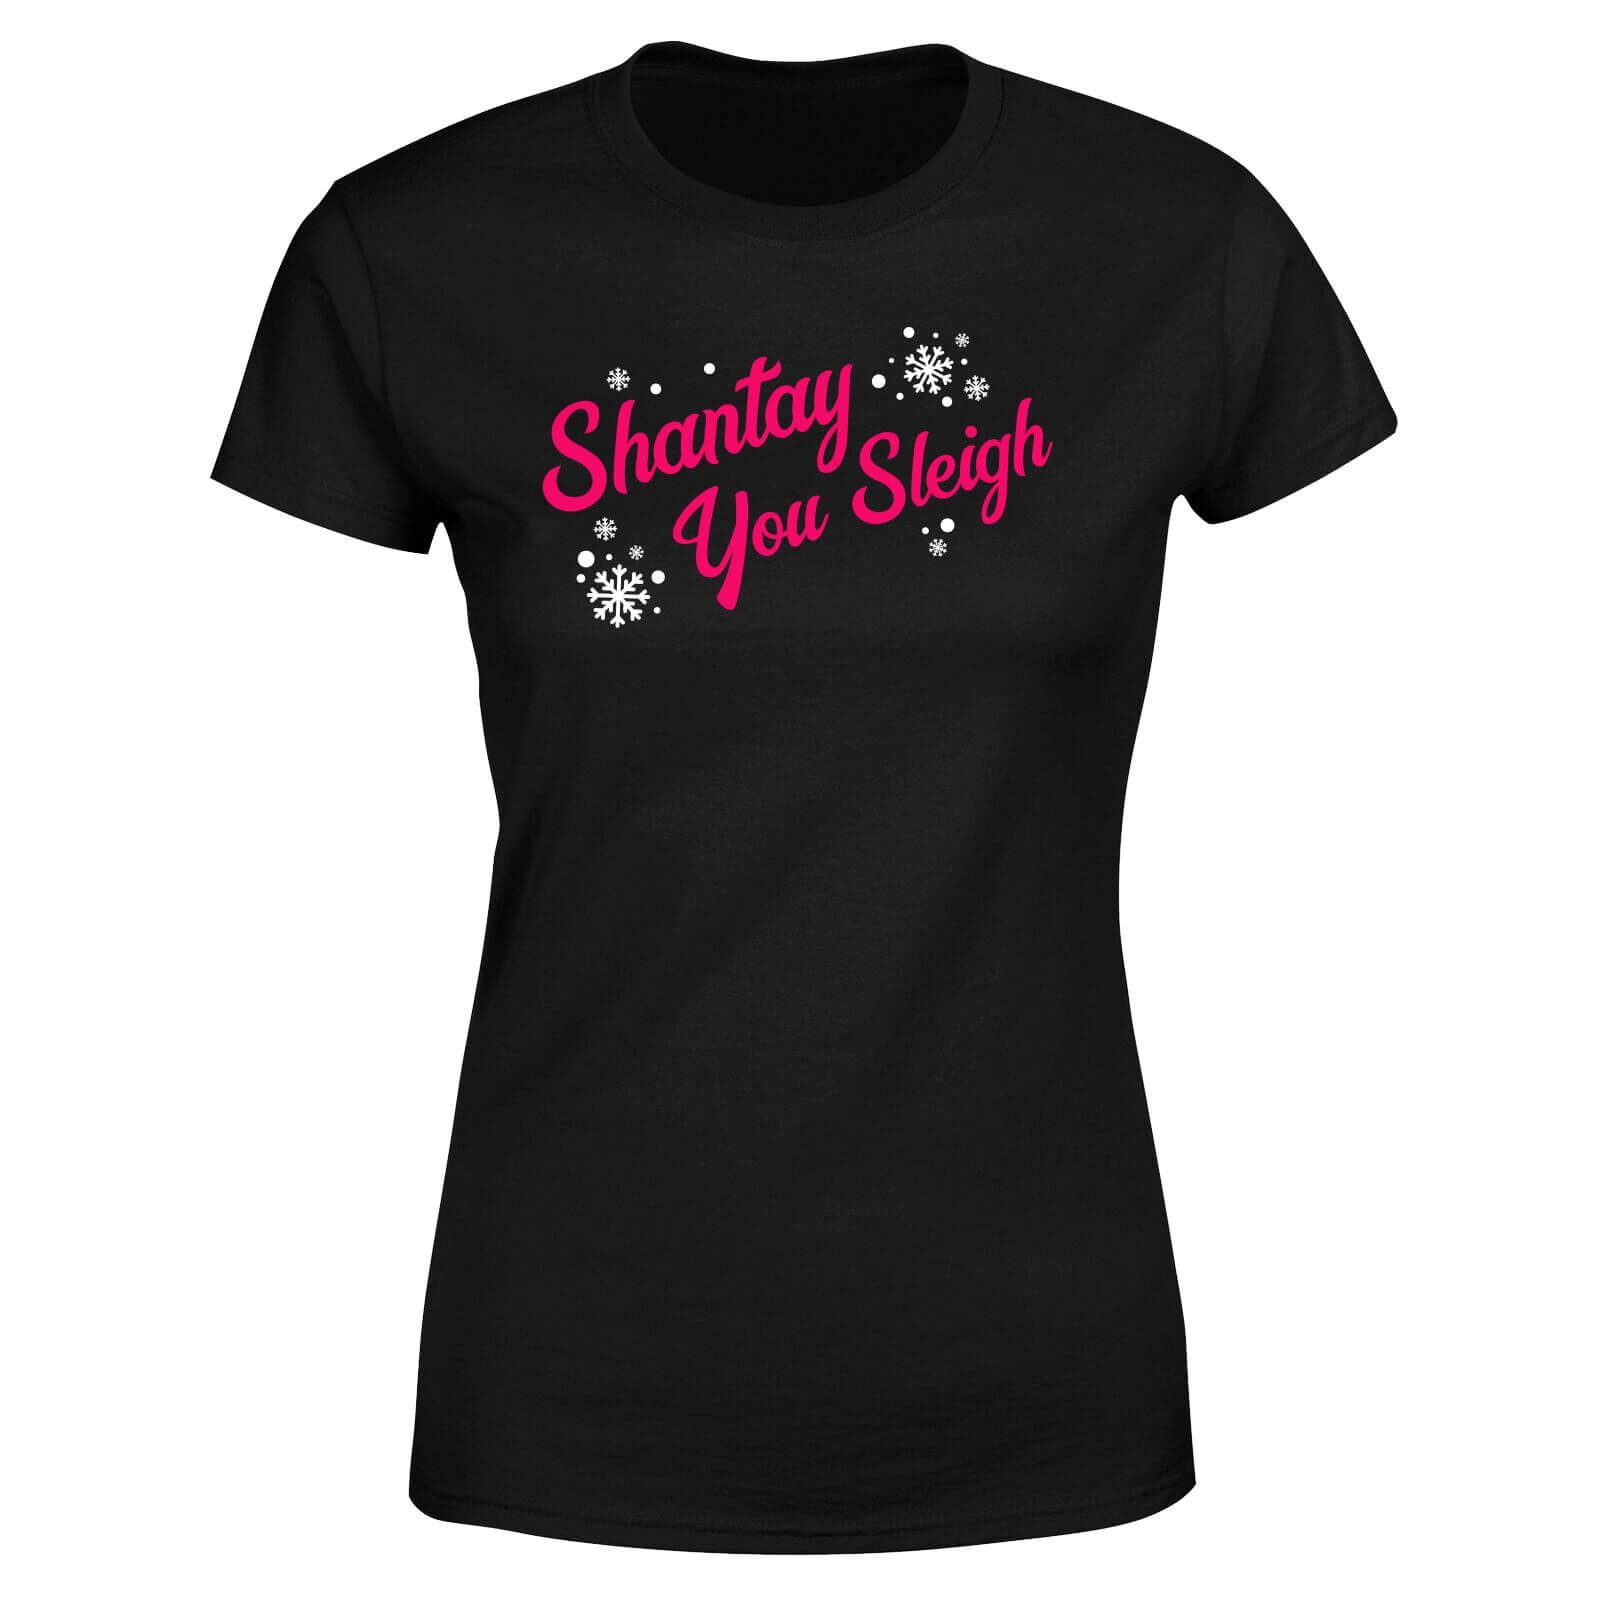 Drag Act Shantay You Sleigh Women's T-Shirt - Black - XS - Black